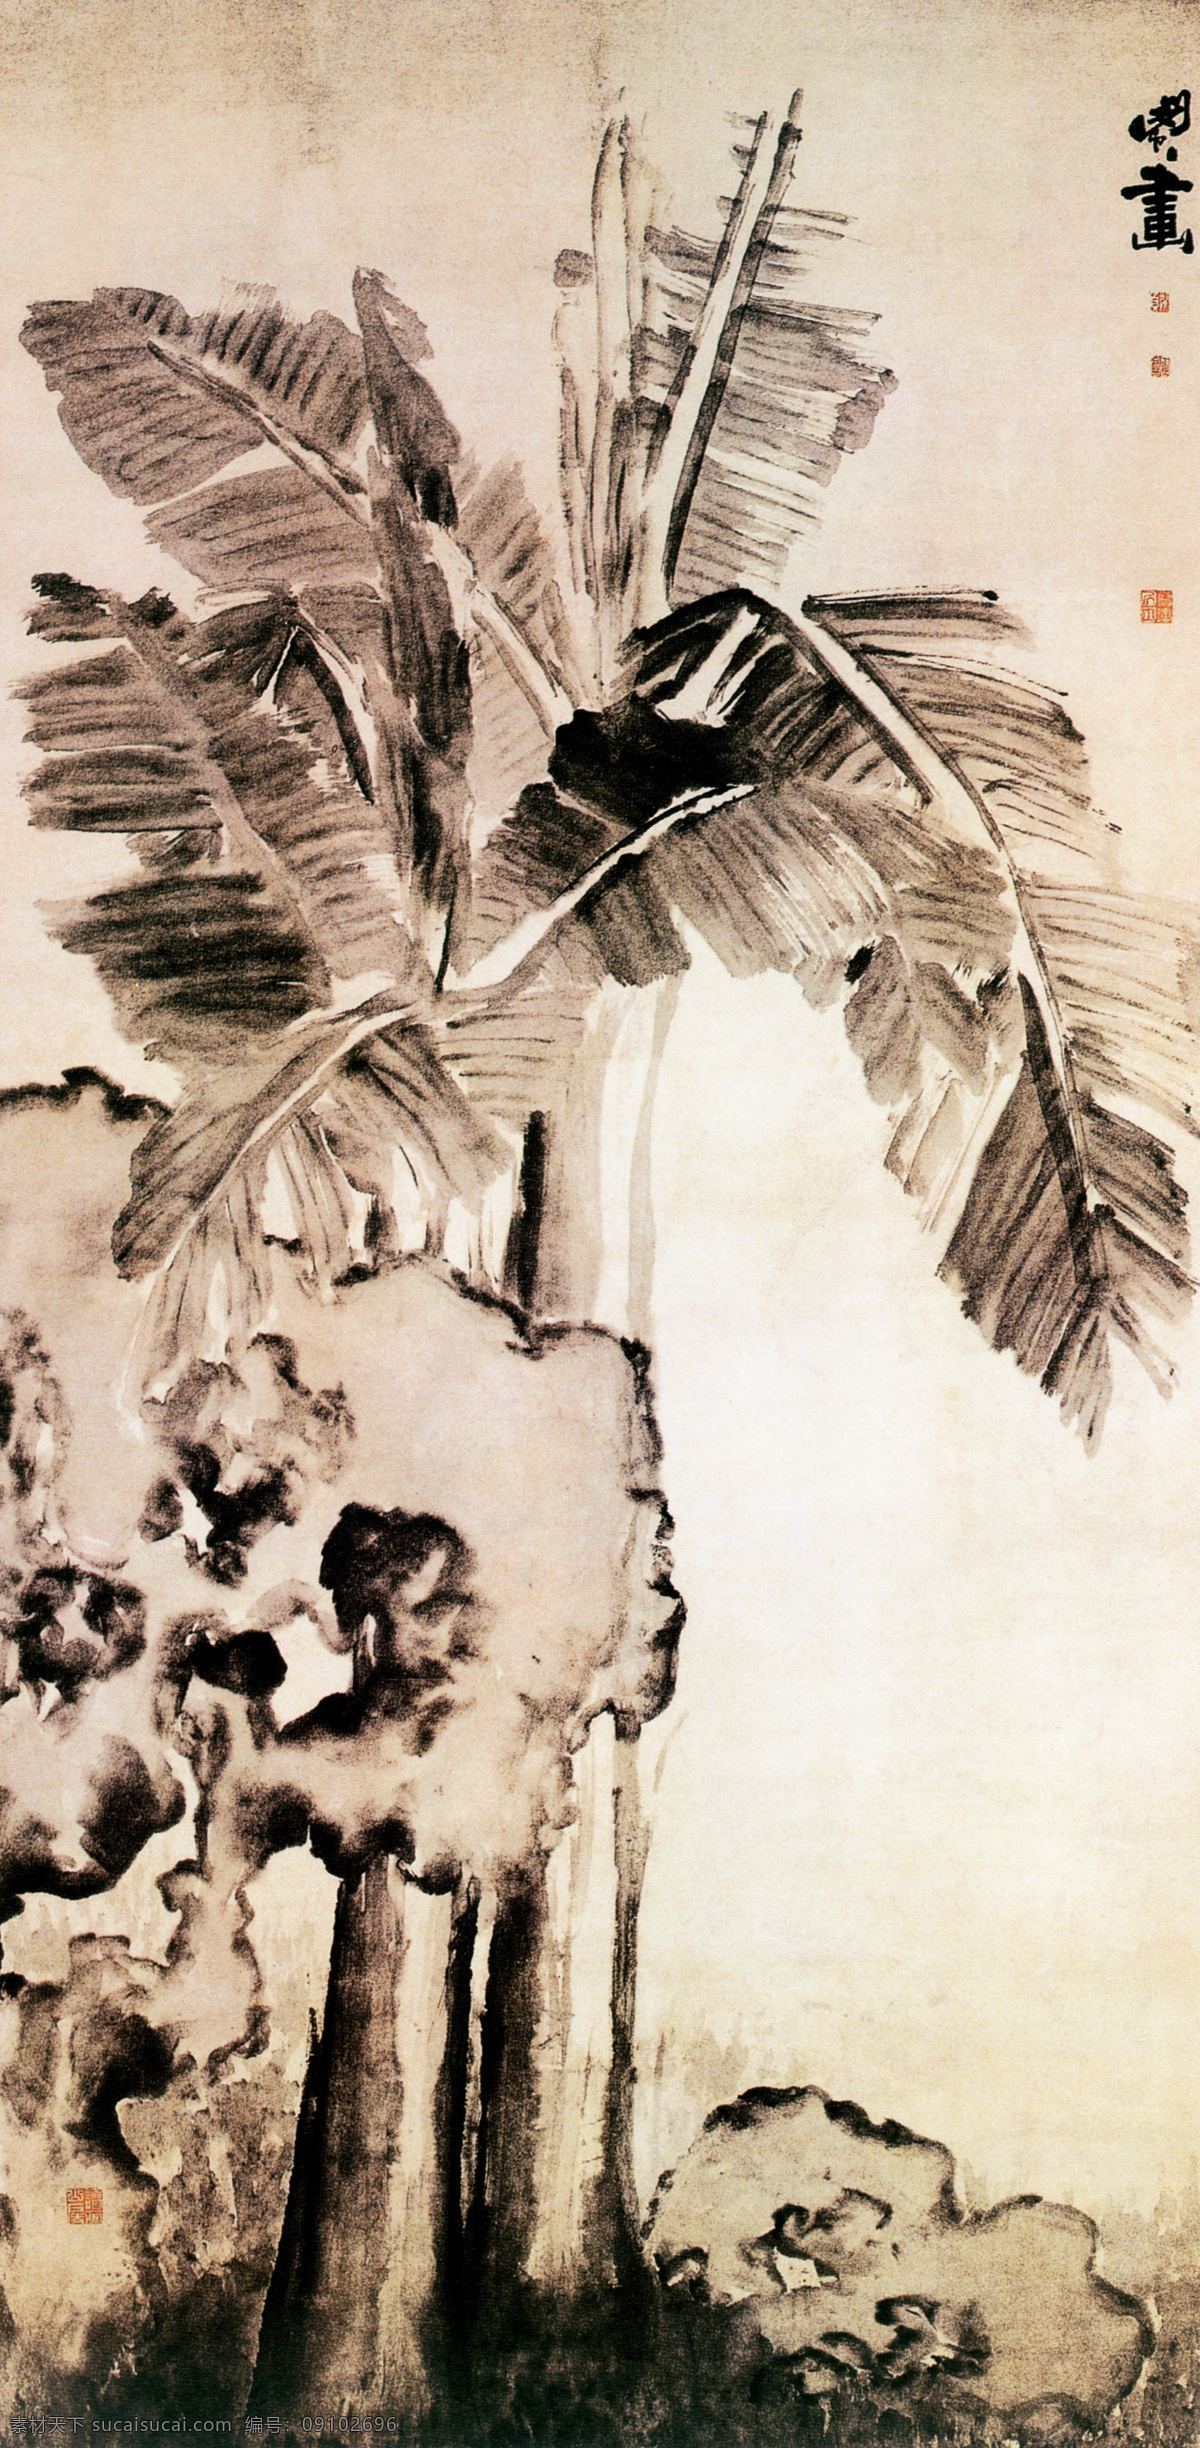 水墨 植物 油画 背景 国画 手绘 插画 装饰画 无框画 底纹背景 彩绘 素描 中国风 书画文字 文化艺术